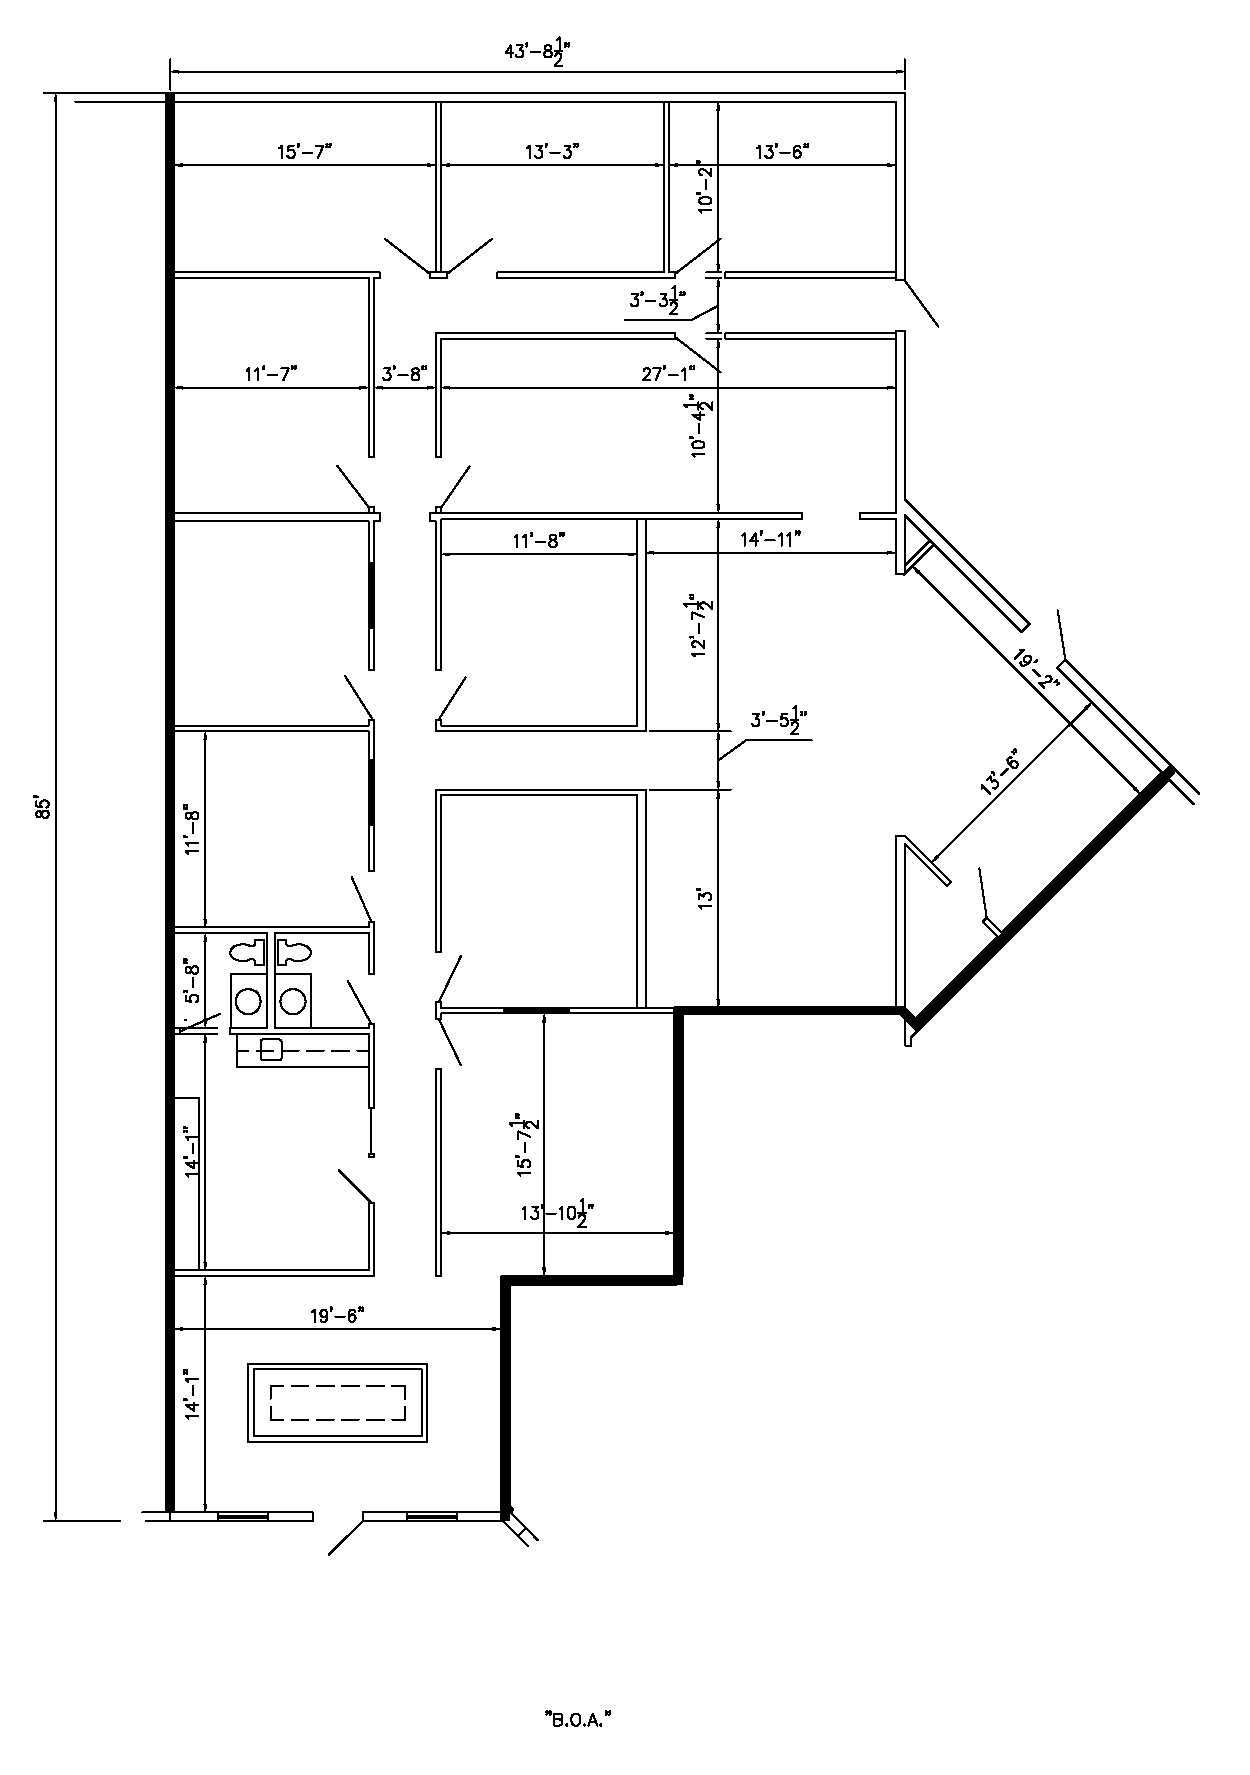 3252 SQFT Floor Plan